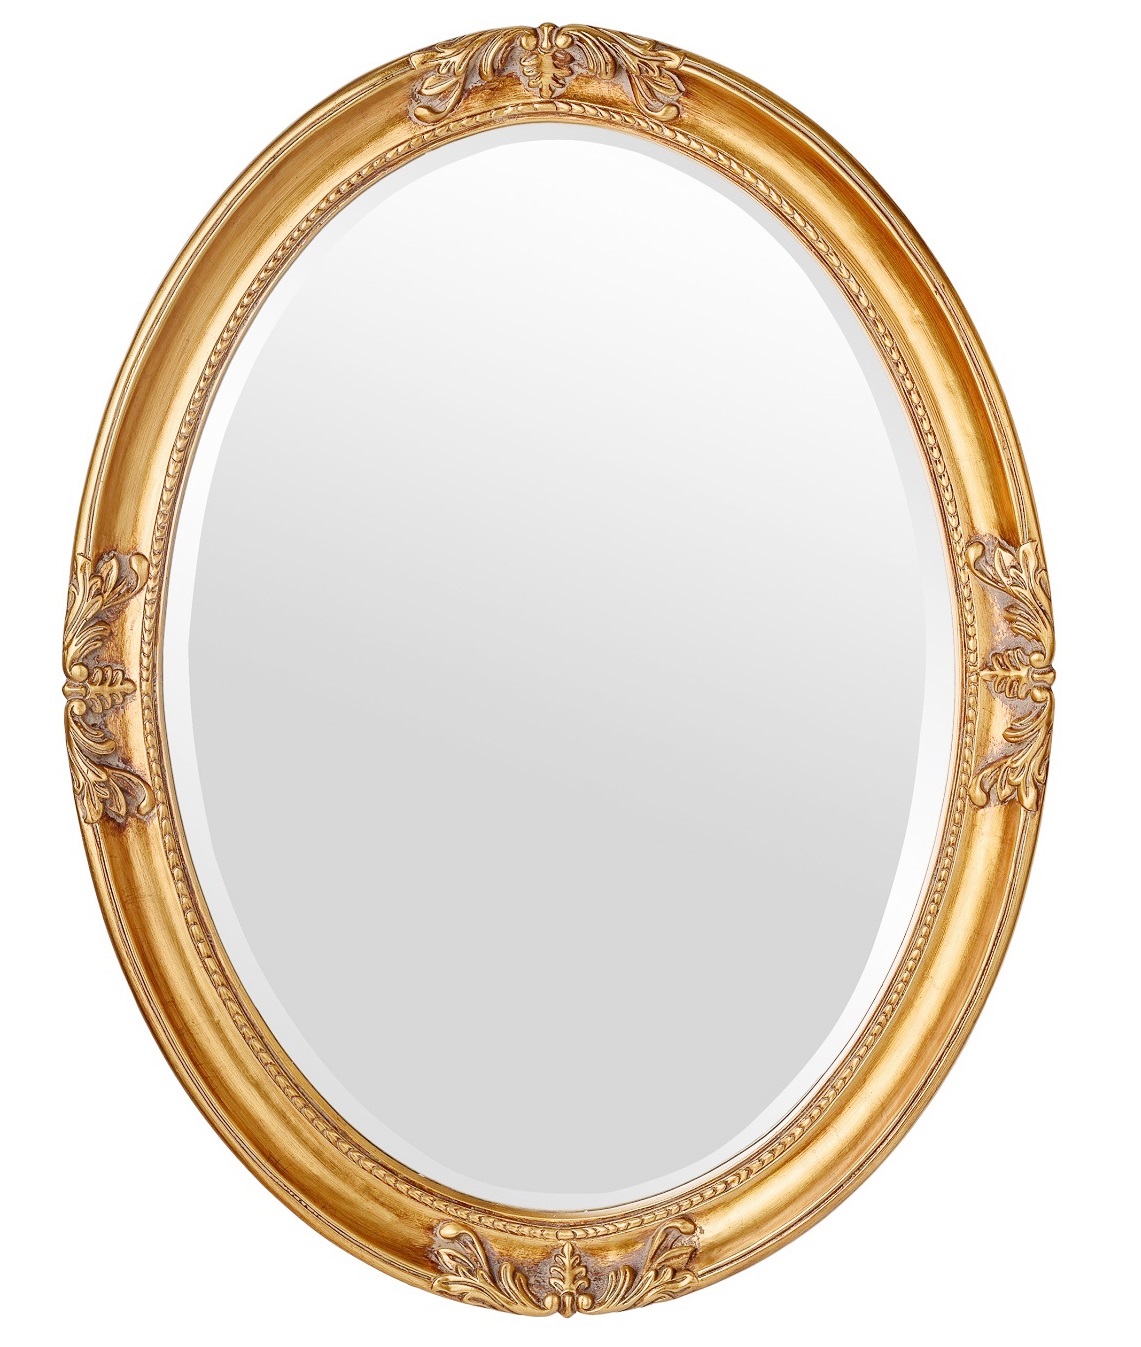 Овальное зеркало в раме Parigi Gold фото и цена, купить